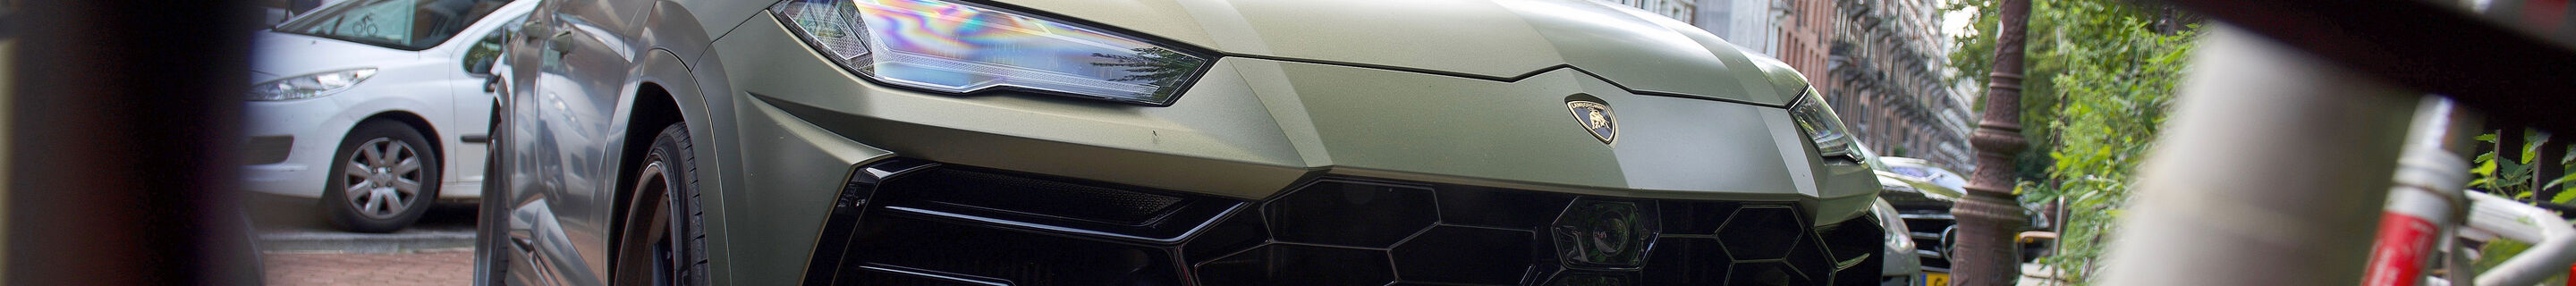 Lamborghini Urus 1016 Industries